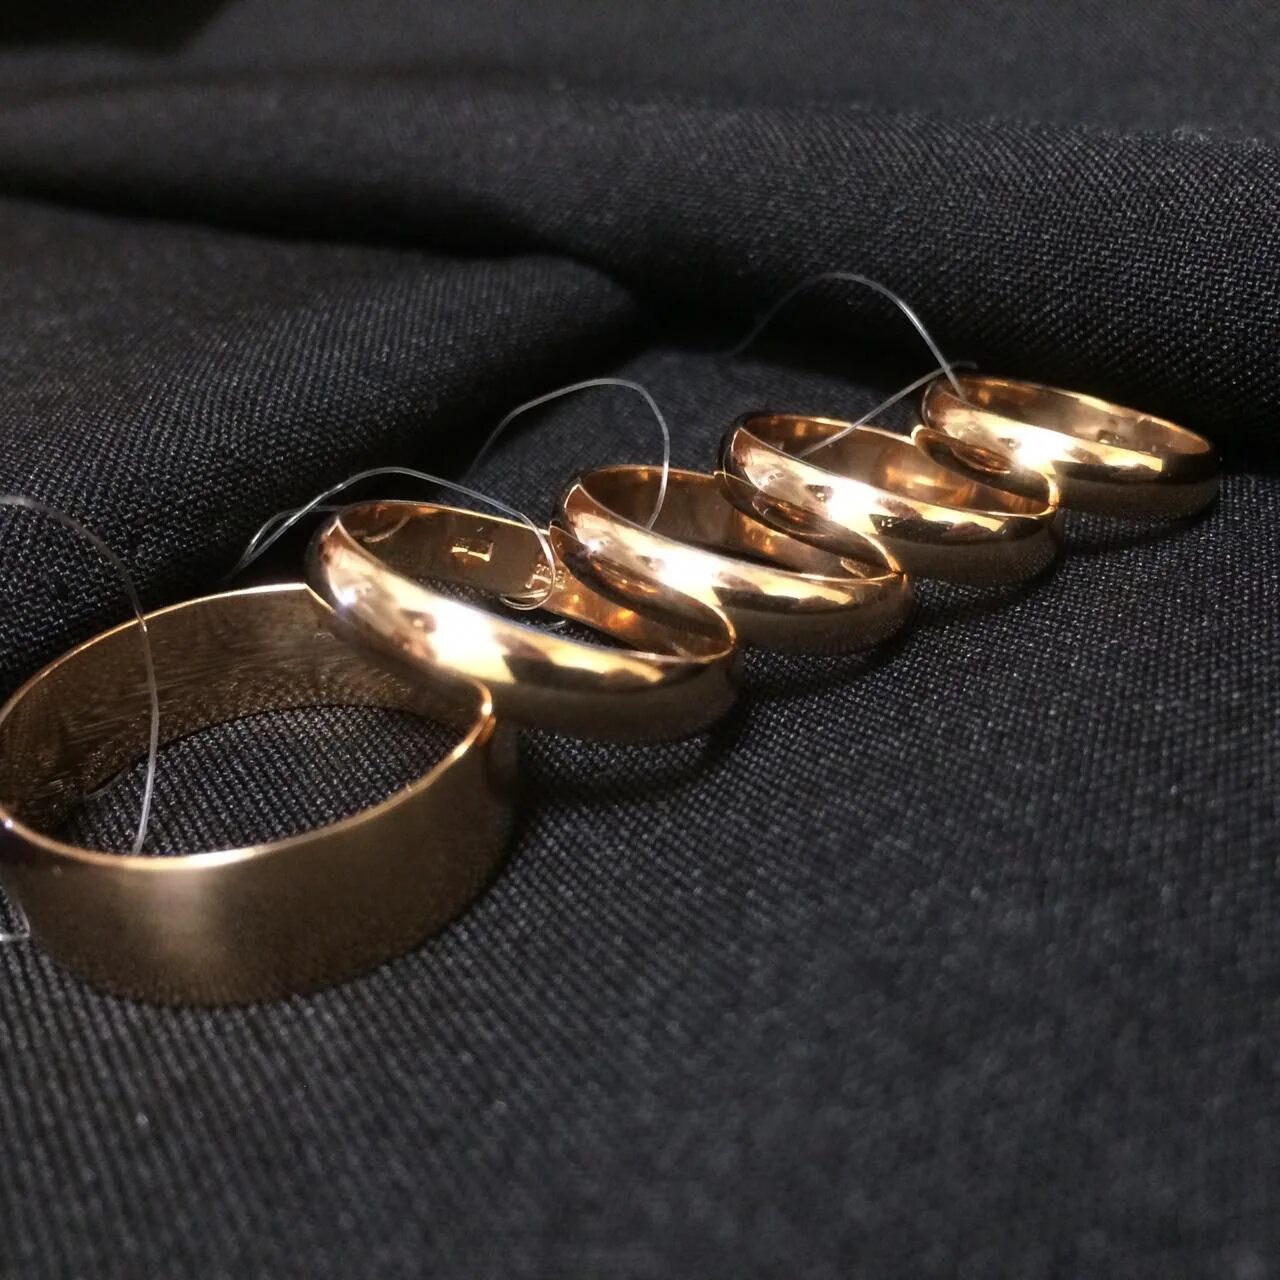 Грамм золота в беларуси 585. Обручальные кольца в ломбарде. Кольцо 7 грамм золота. Обручальное кольцо 5 грамм. Дубайское золото кольца обручальные.